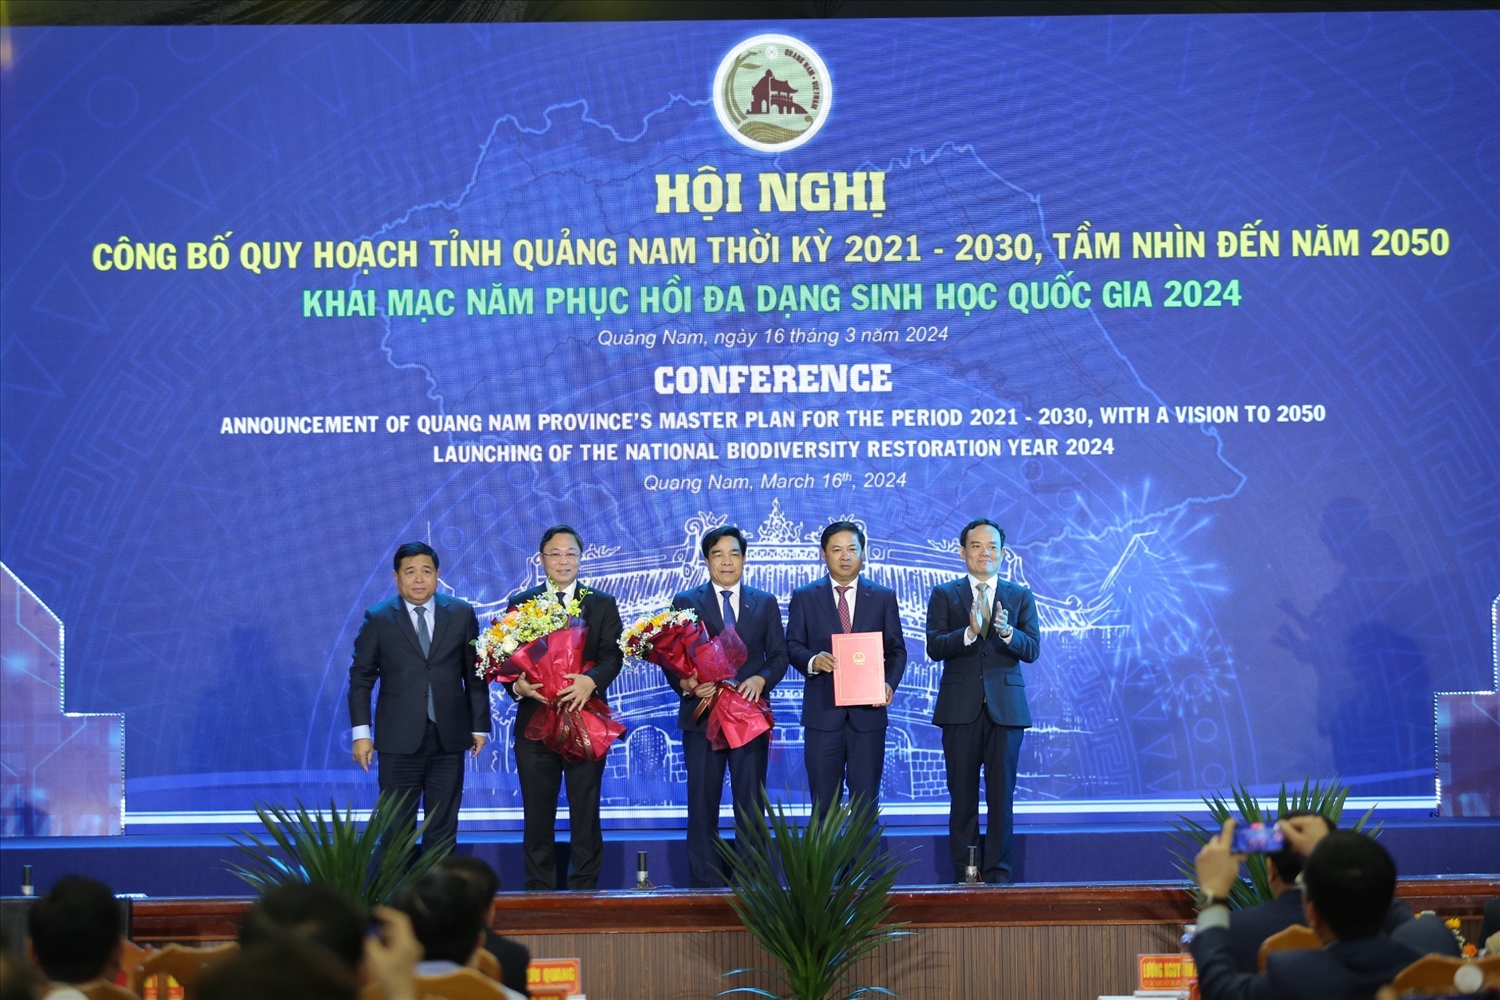 Phó Thủ tướng Chính phủ Trần Lưu Quang trao Quyết định của Thủ tướng Chính phủ về phê duyệt Quy hoạch tỉnh Quảng Nam thời kỳ 2021 - 2030, tầm nhìn đến năm 2050 cho lãnh đạo tỉnh Quảng Nam